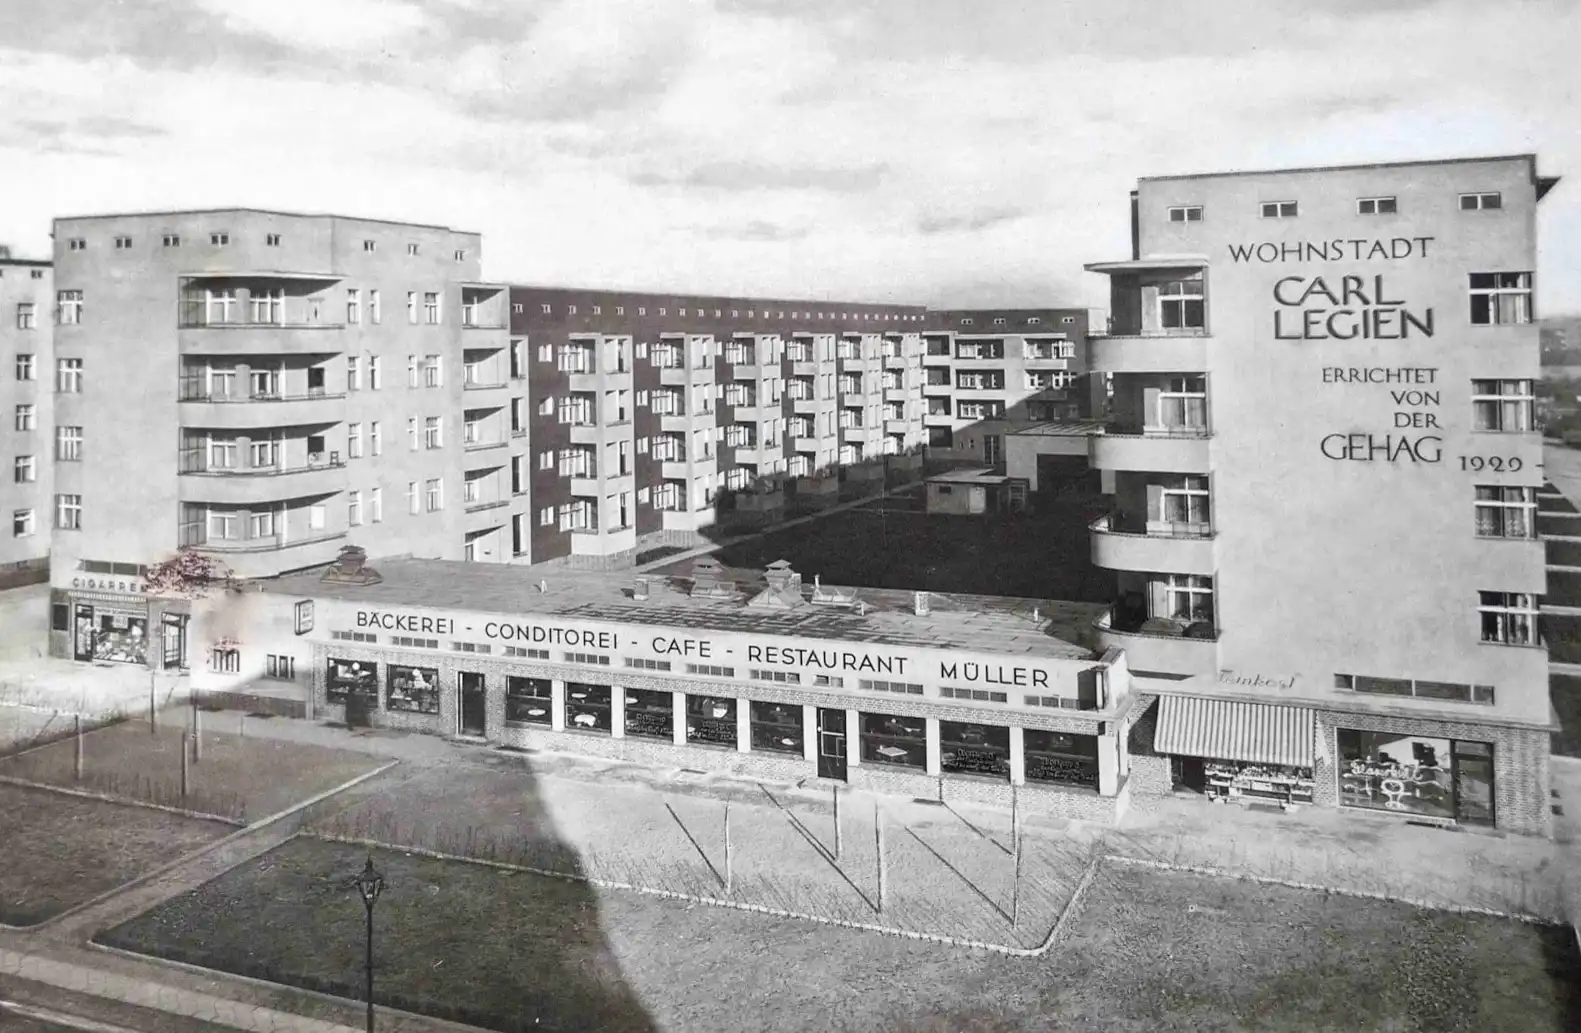 Wohnstadt Carl Legien, 1928-1930. Architekten: Bruno Taut, Franz Hillinger. Zeitgenössische Ansichtskarte